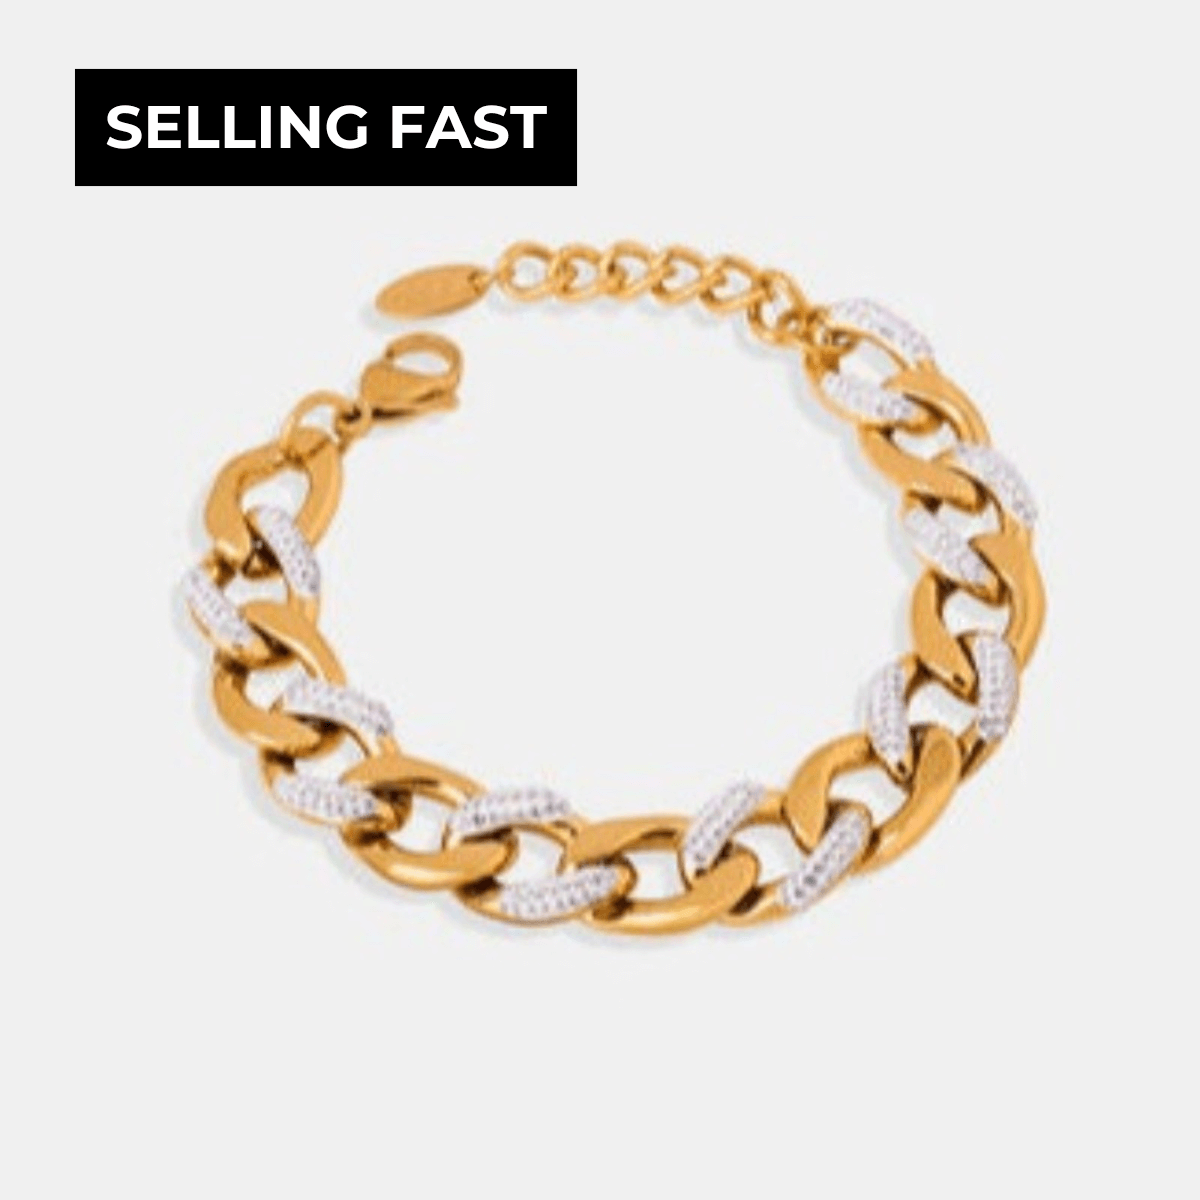 1# BEST Women's Gold Diamond Chunky Chain Bracelet for Women, #1 Best Most Top Trendy Trending Gold Diamond Chunky Chain Bracelet for Women Gift, Mason & Madison Co.